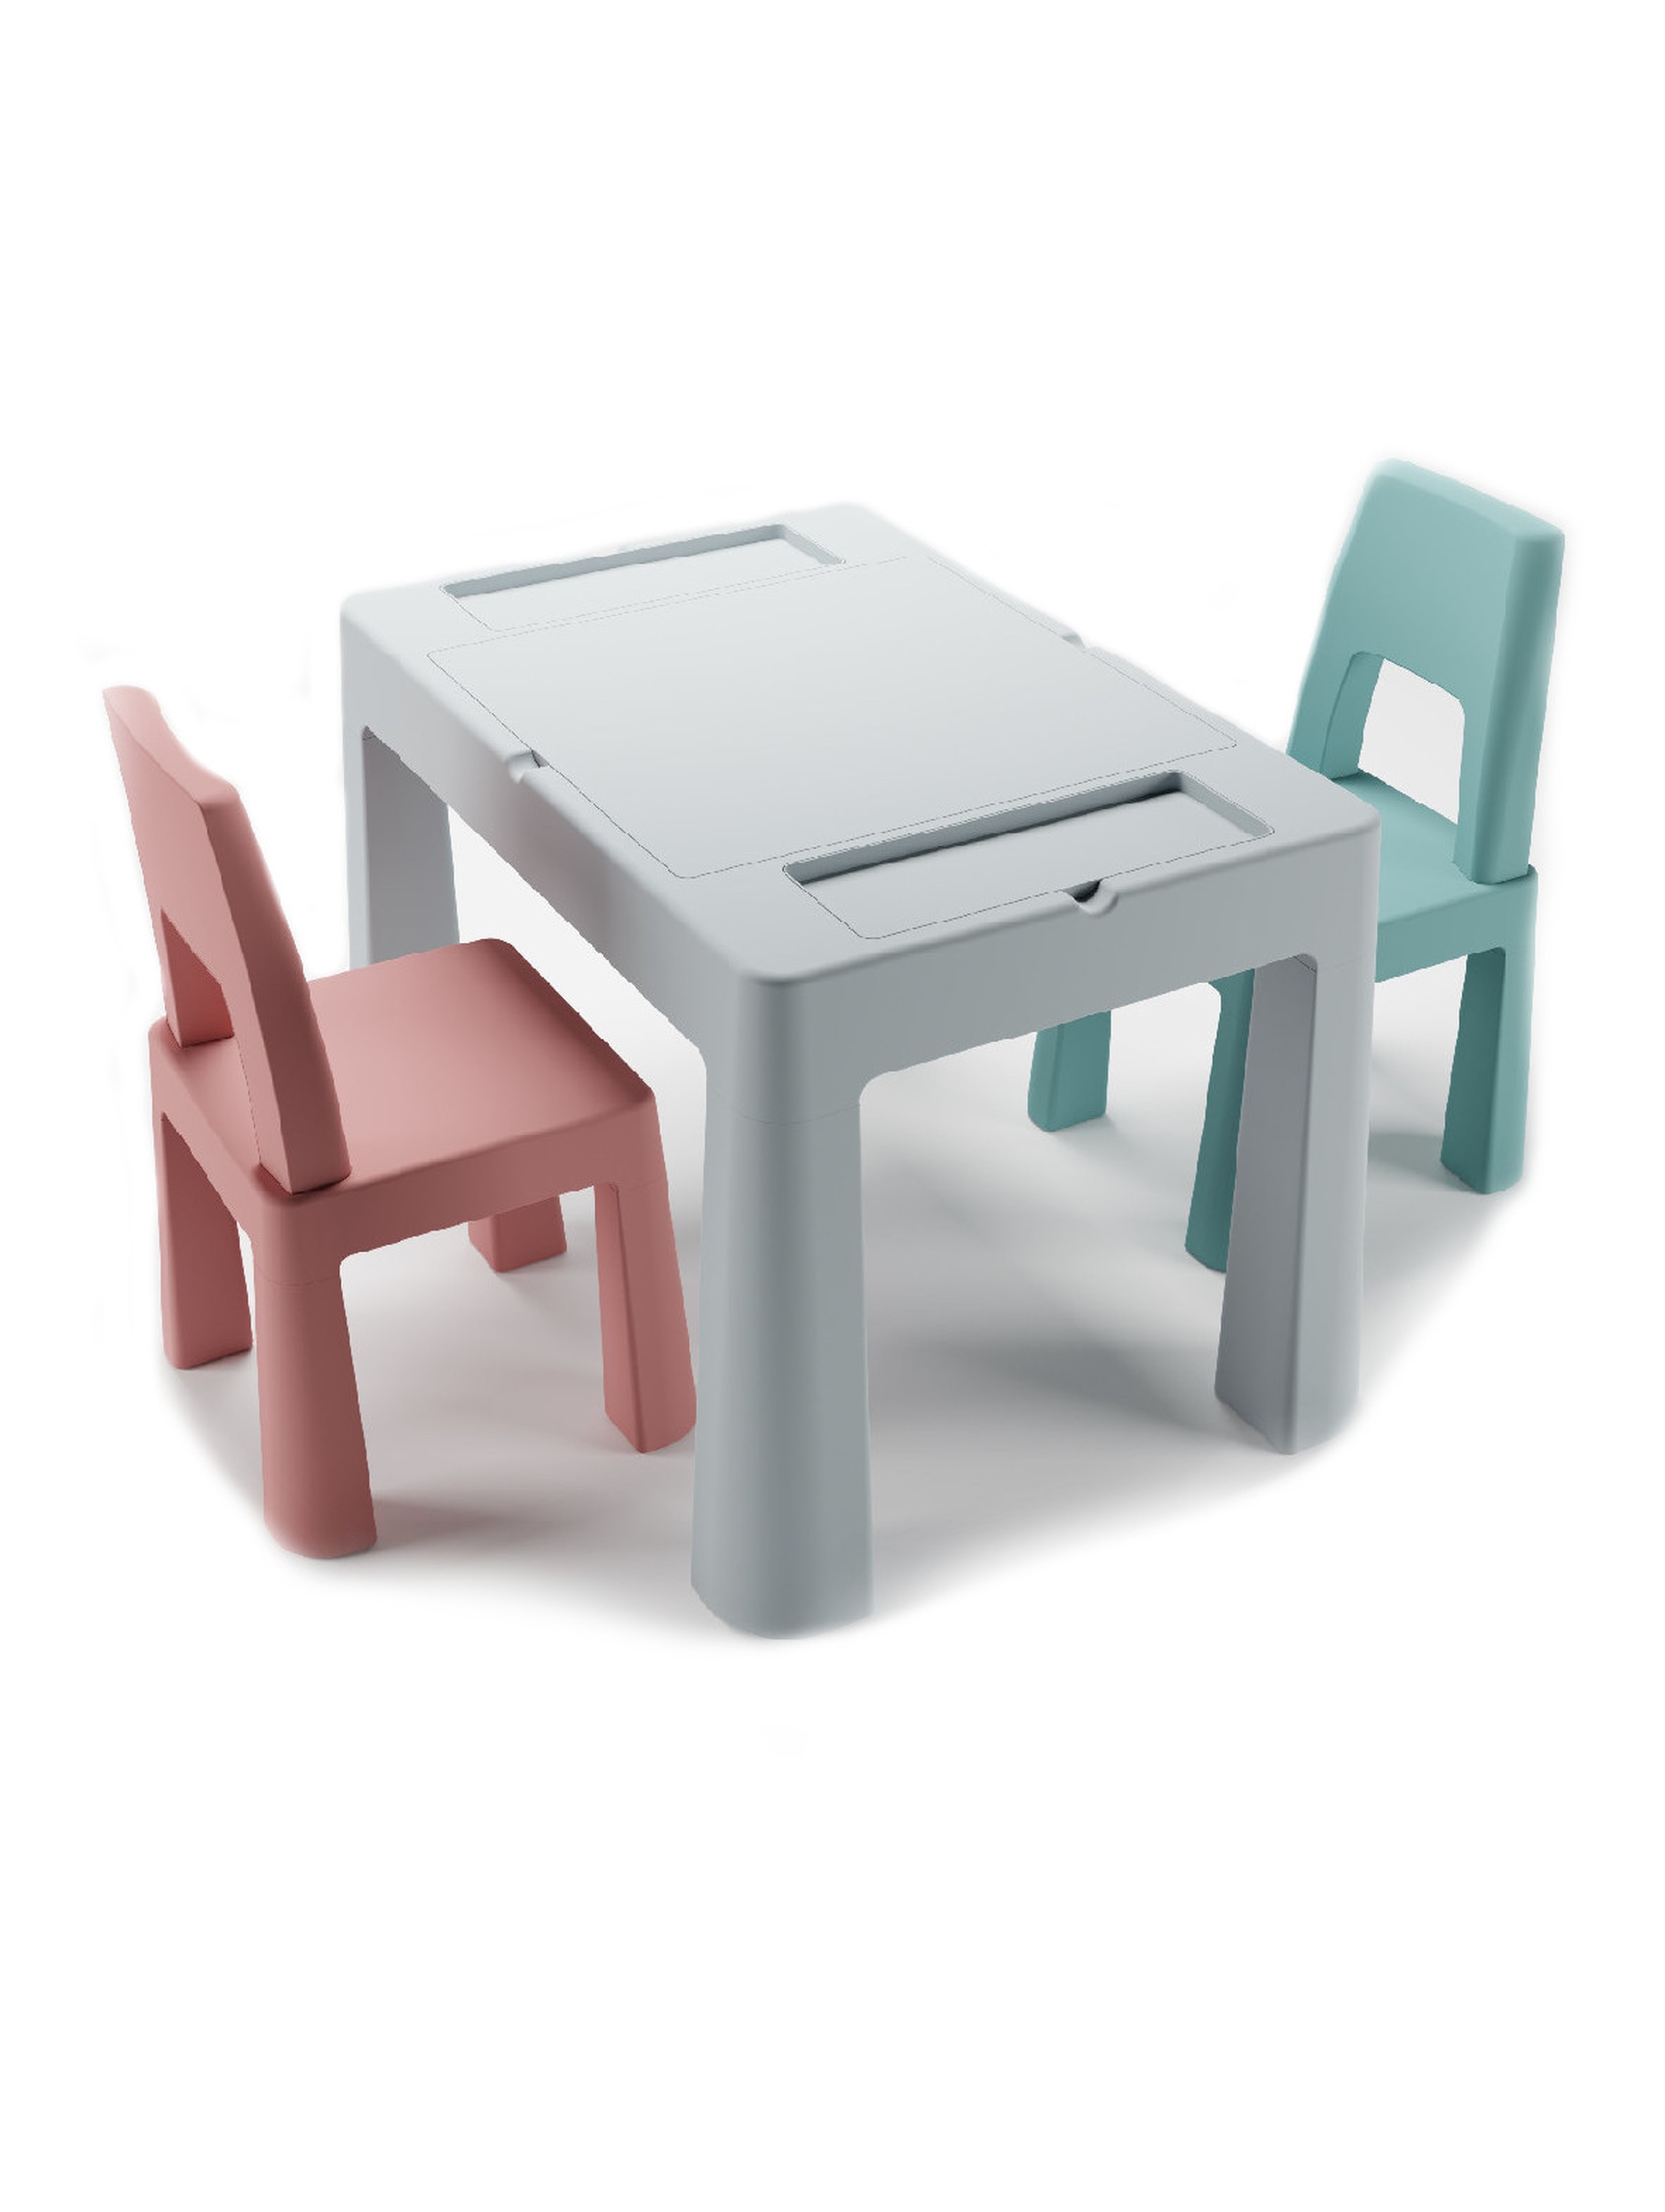 Komplet Multifun stolik i dwa krzesełka - szary, różowy, turkusowy